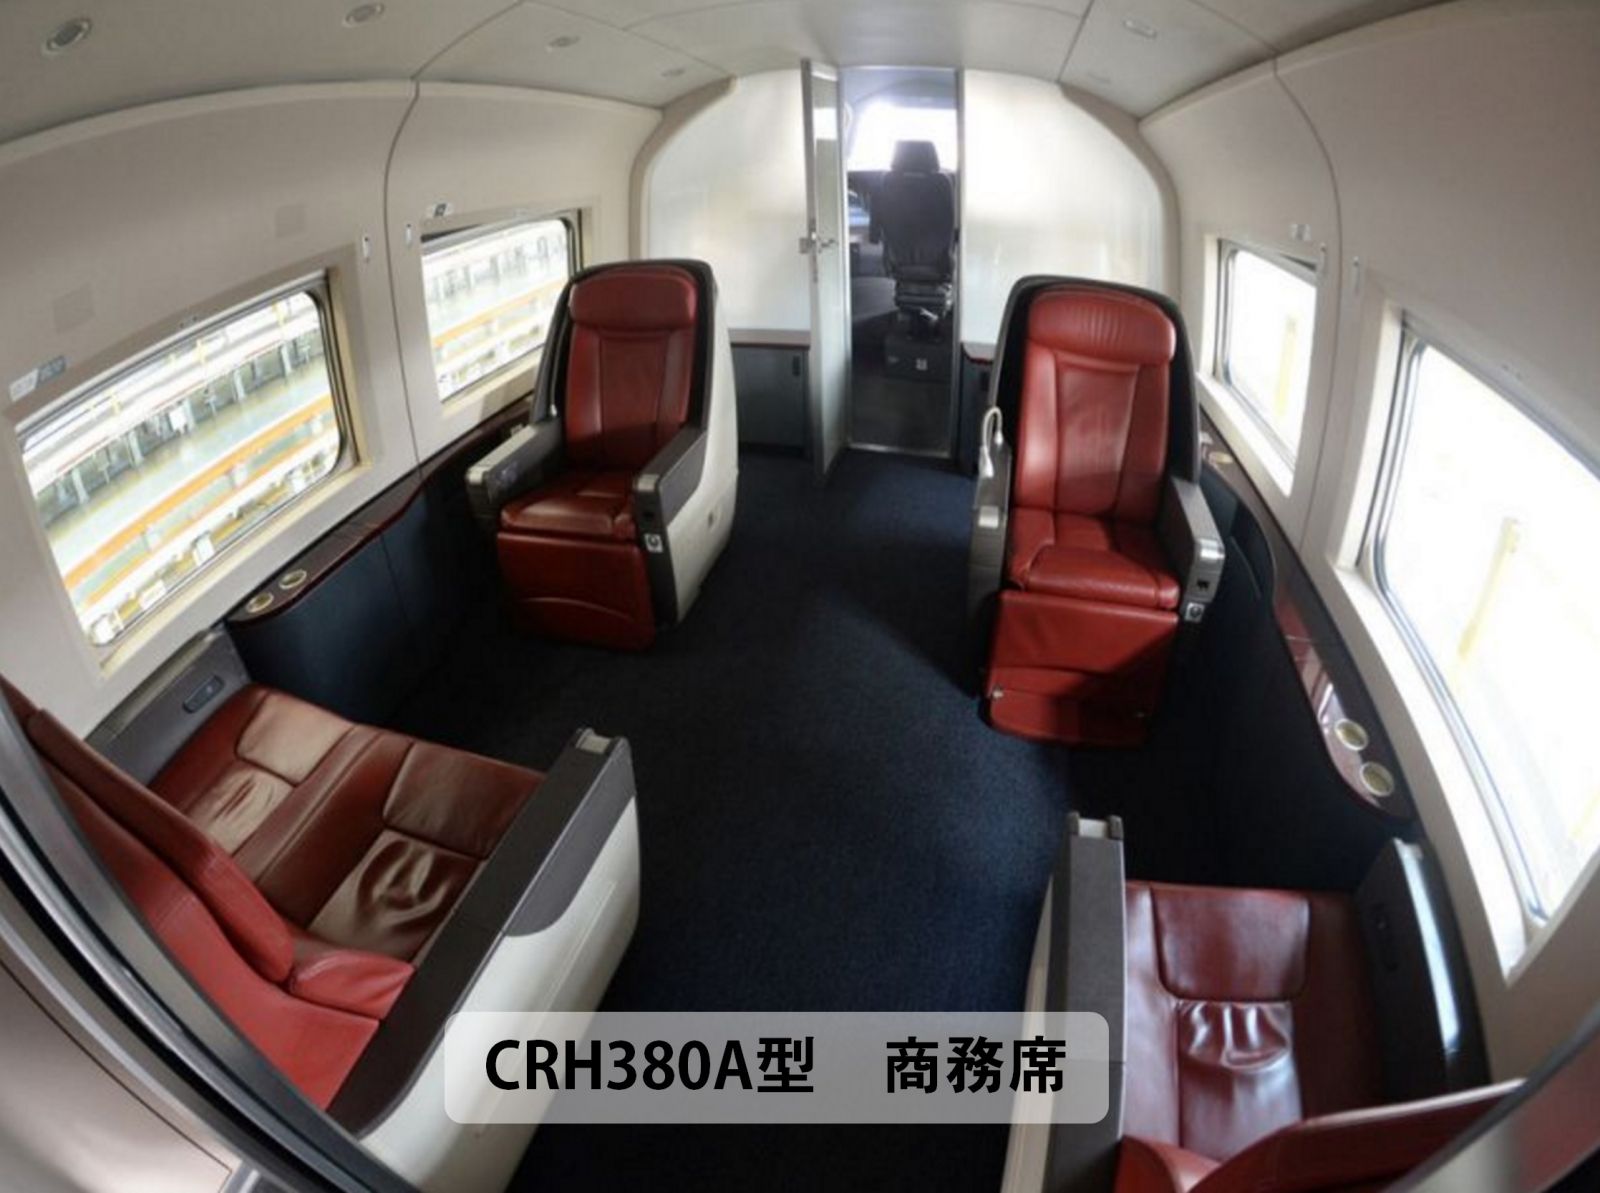 中国高速鉄道CRH380D型電車